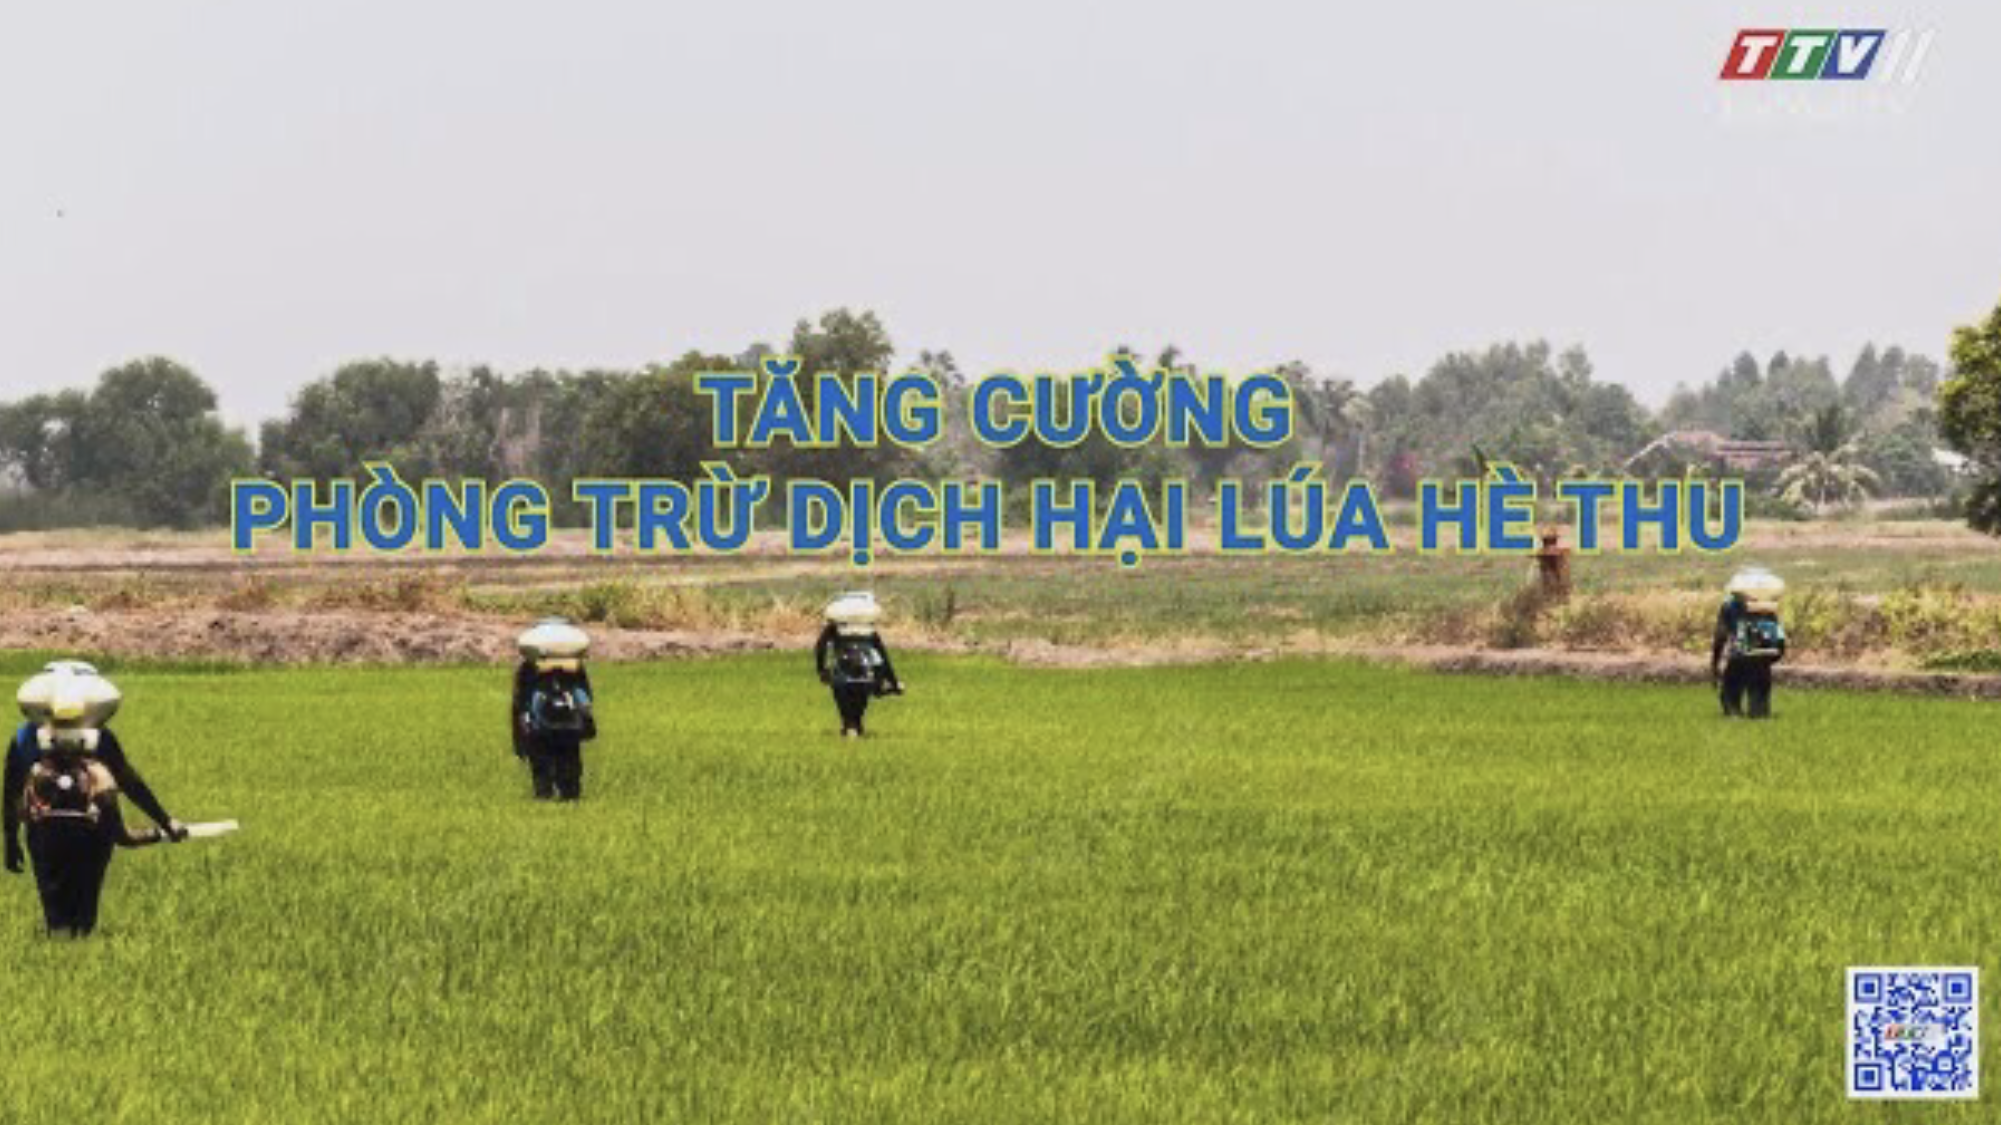 Tăng cường phòng trừ dịch hại lúa Hè Thu | Nông nghiệp Tây Ninh | TayNinhTV